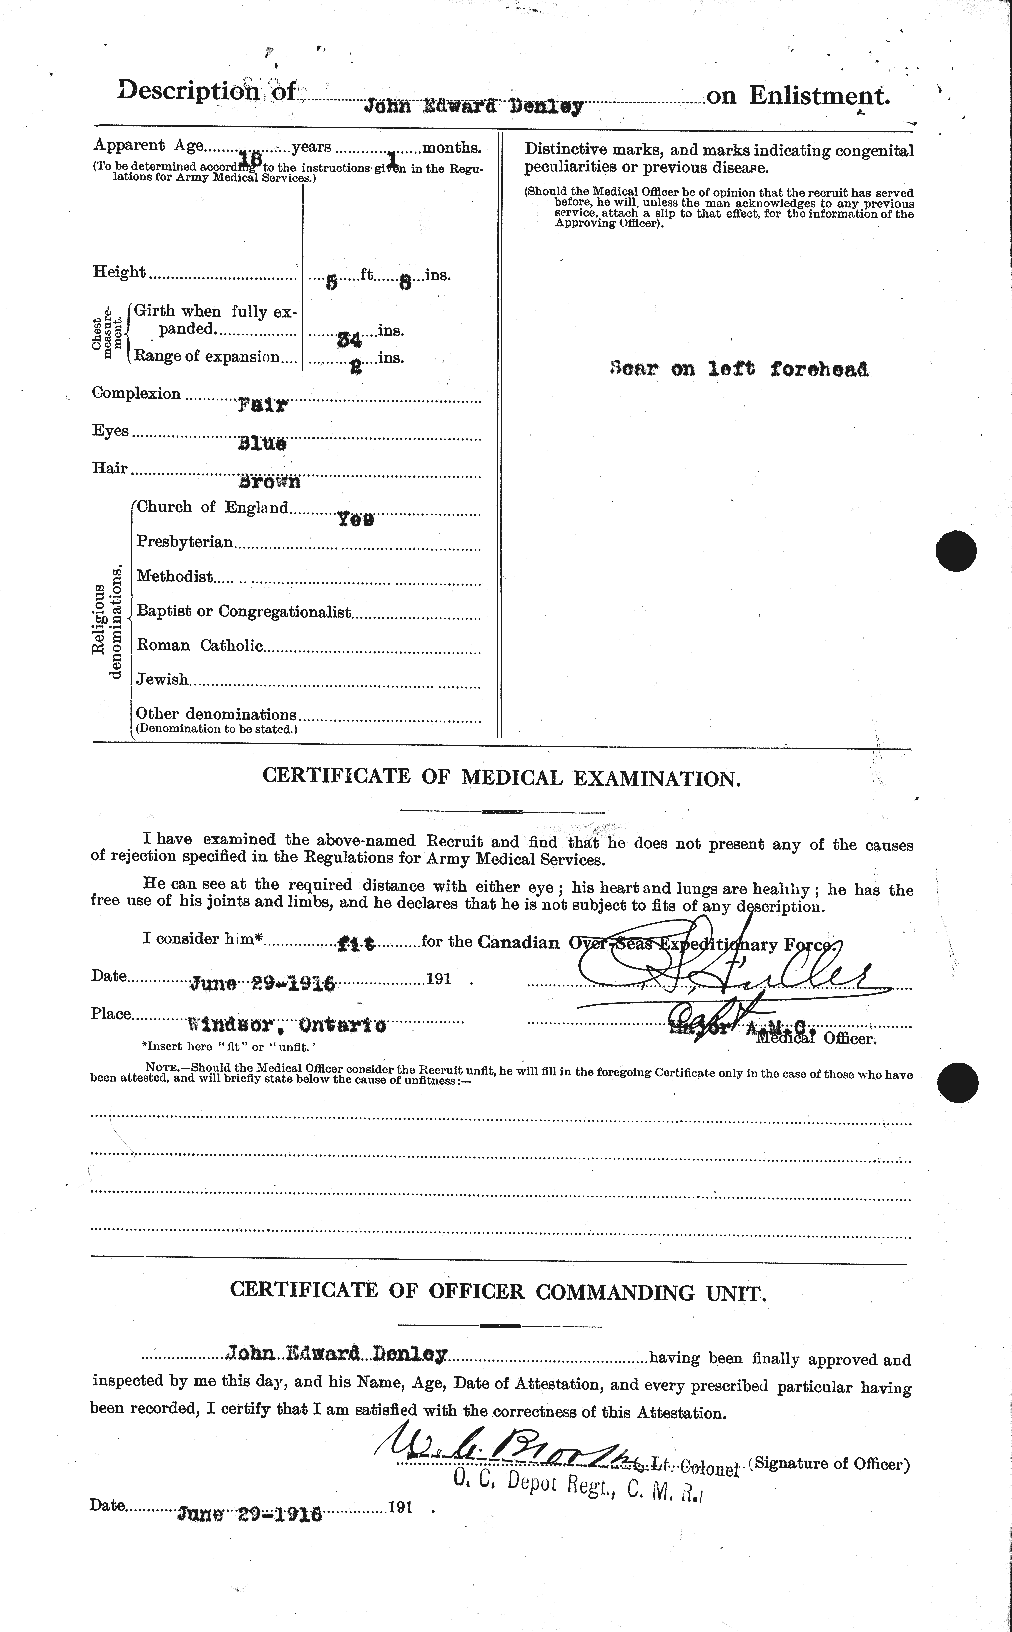 Dossiers du Personnel de la Première Guerre mondiale - CEC 288105b